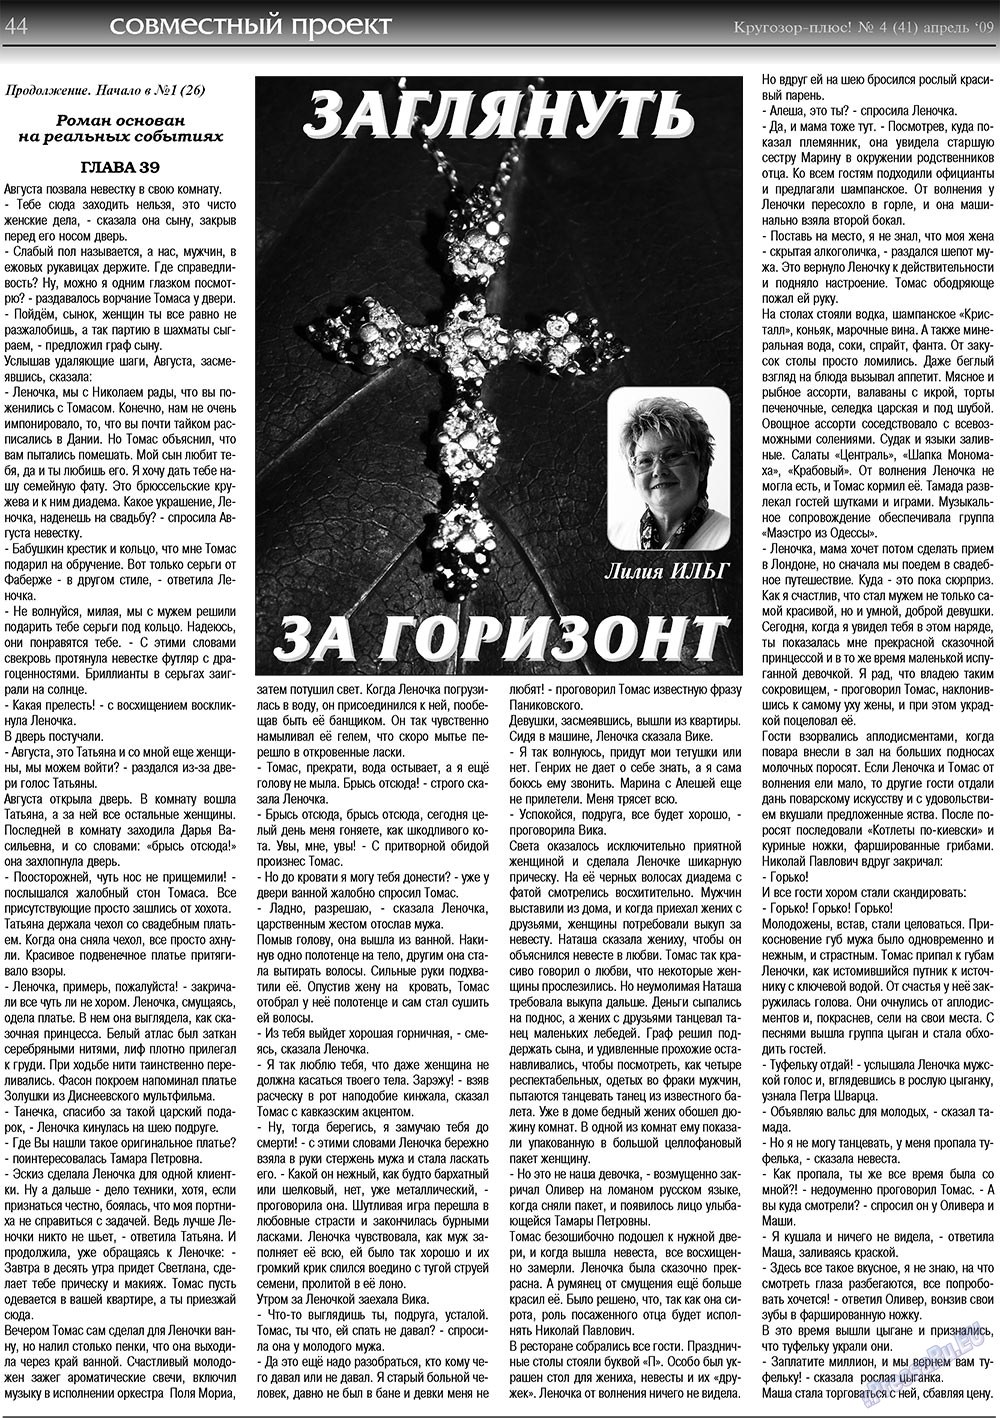 Кругозор плюс!, газета. 2009 №4 стр.44